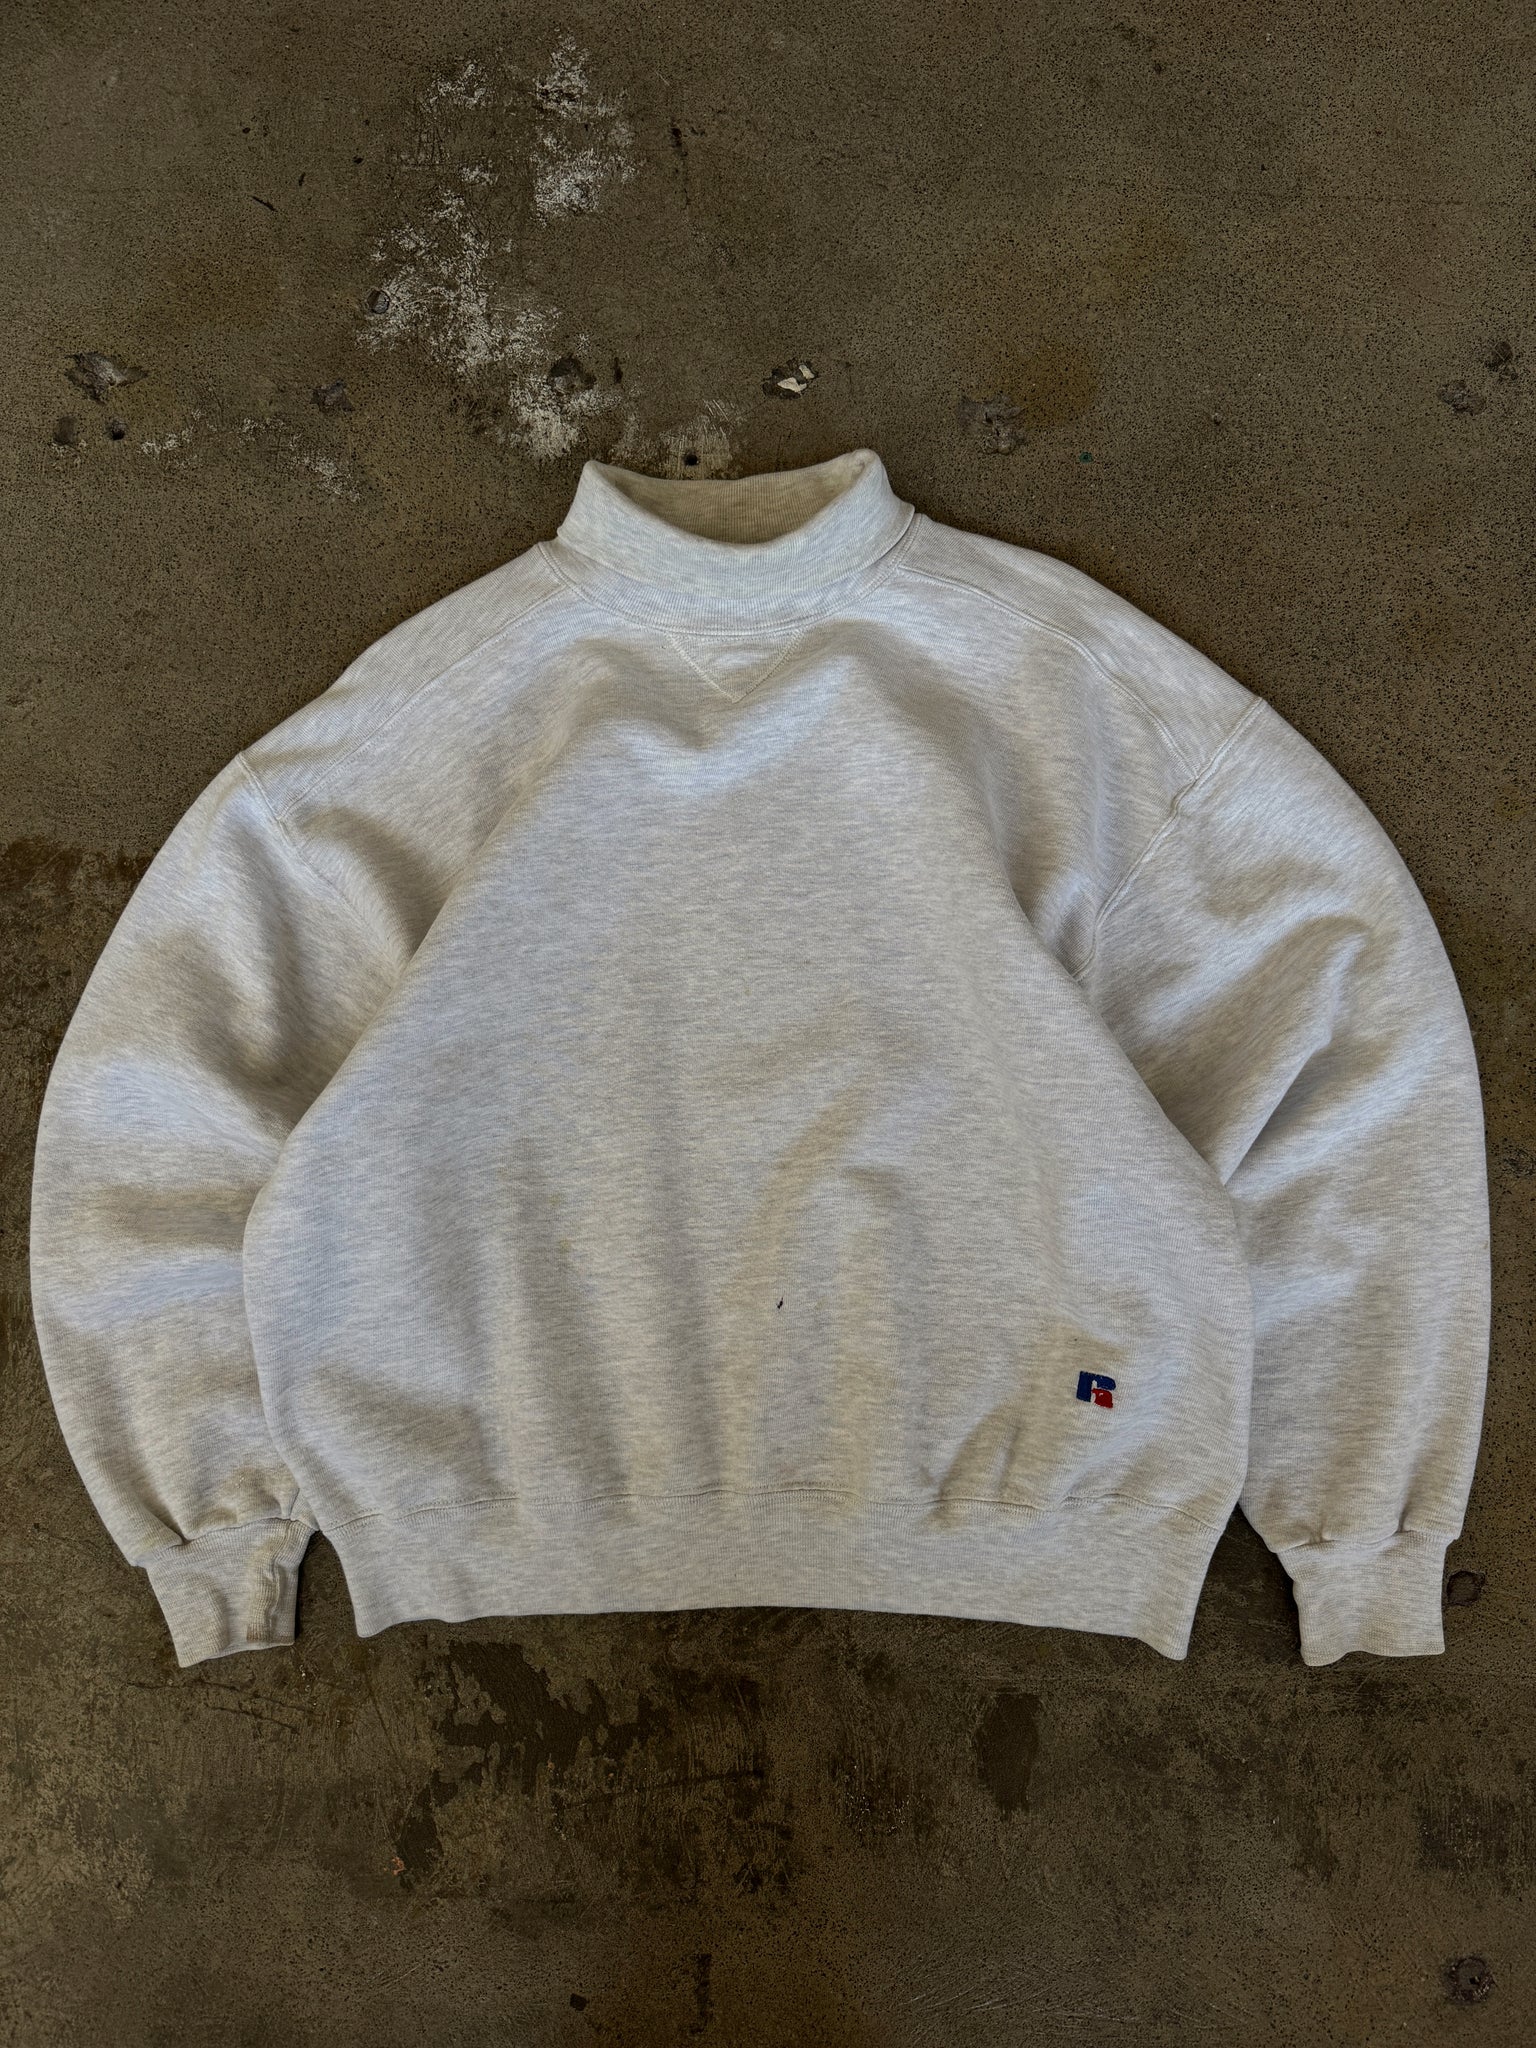 Vintage Blank Russell Athletics Turtleneck Sweatshirt (L)